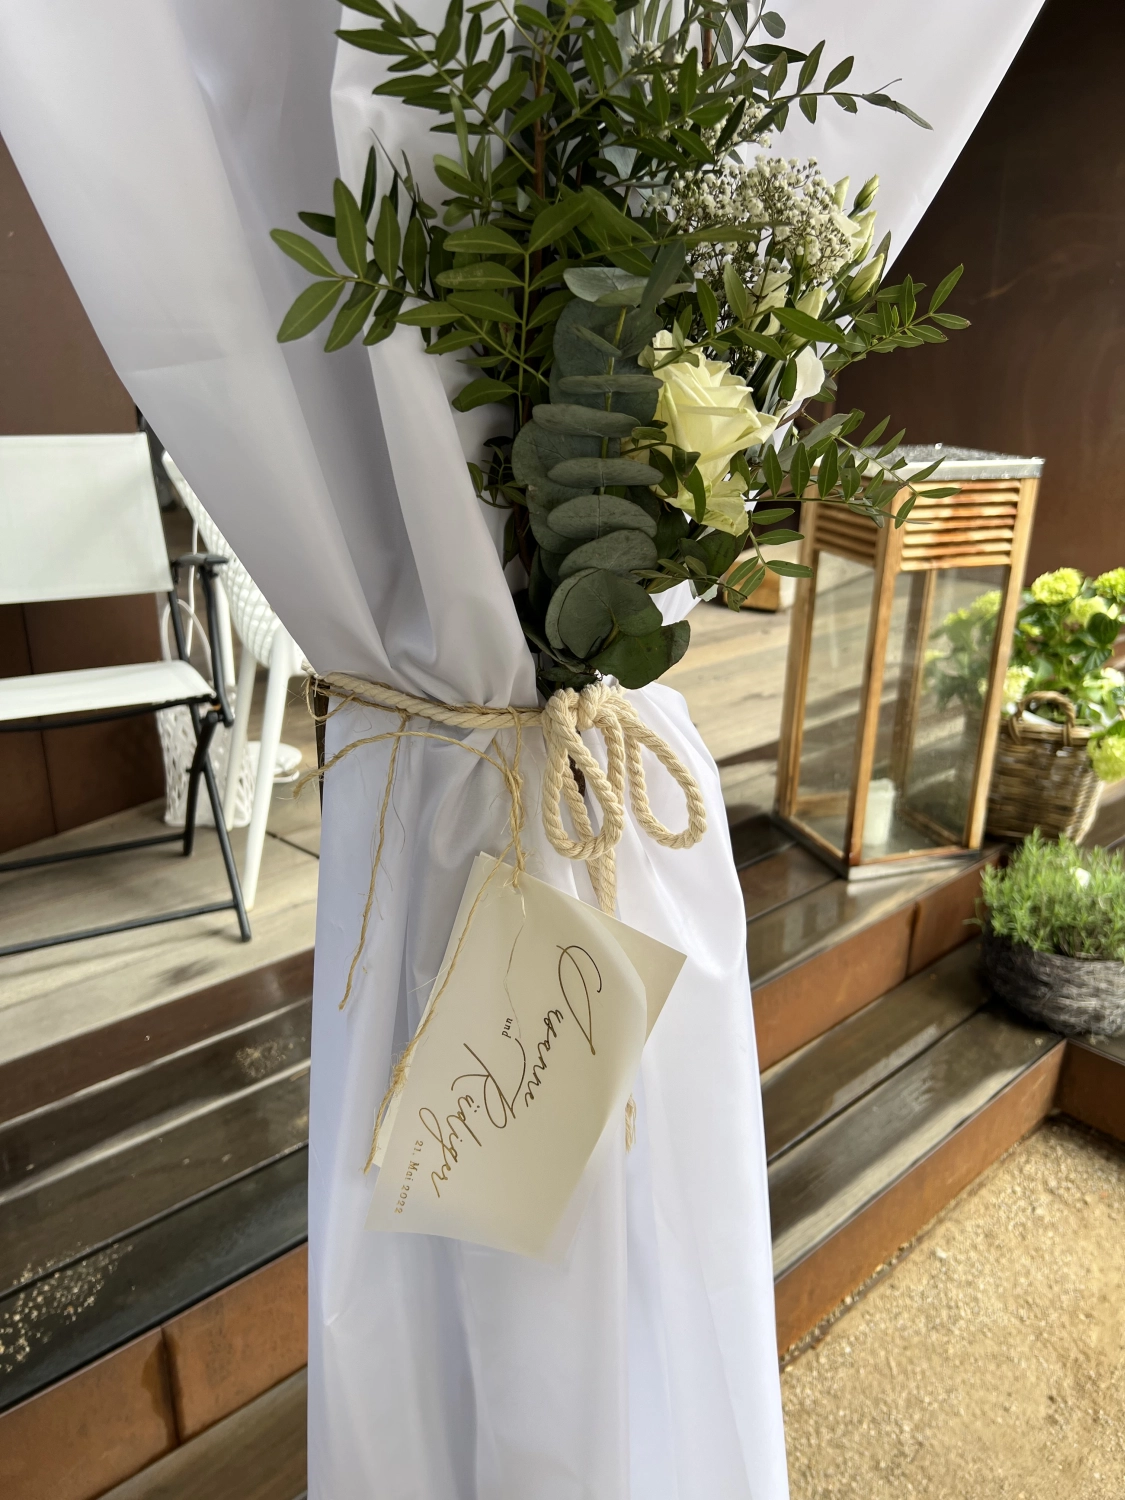 Taparazzi-Restaurant, mit Blumen geschmückter Mast, mit weißem Tuch bedeckt und mit einem Namensschild versehen